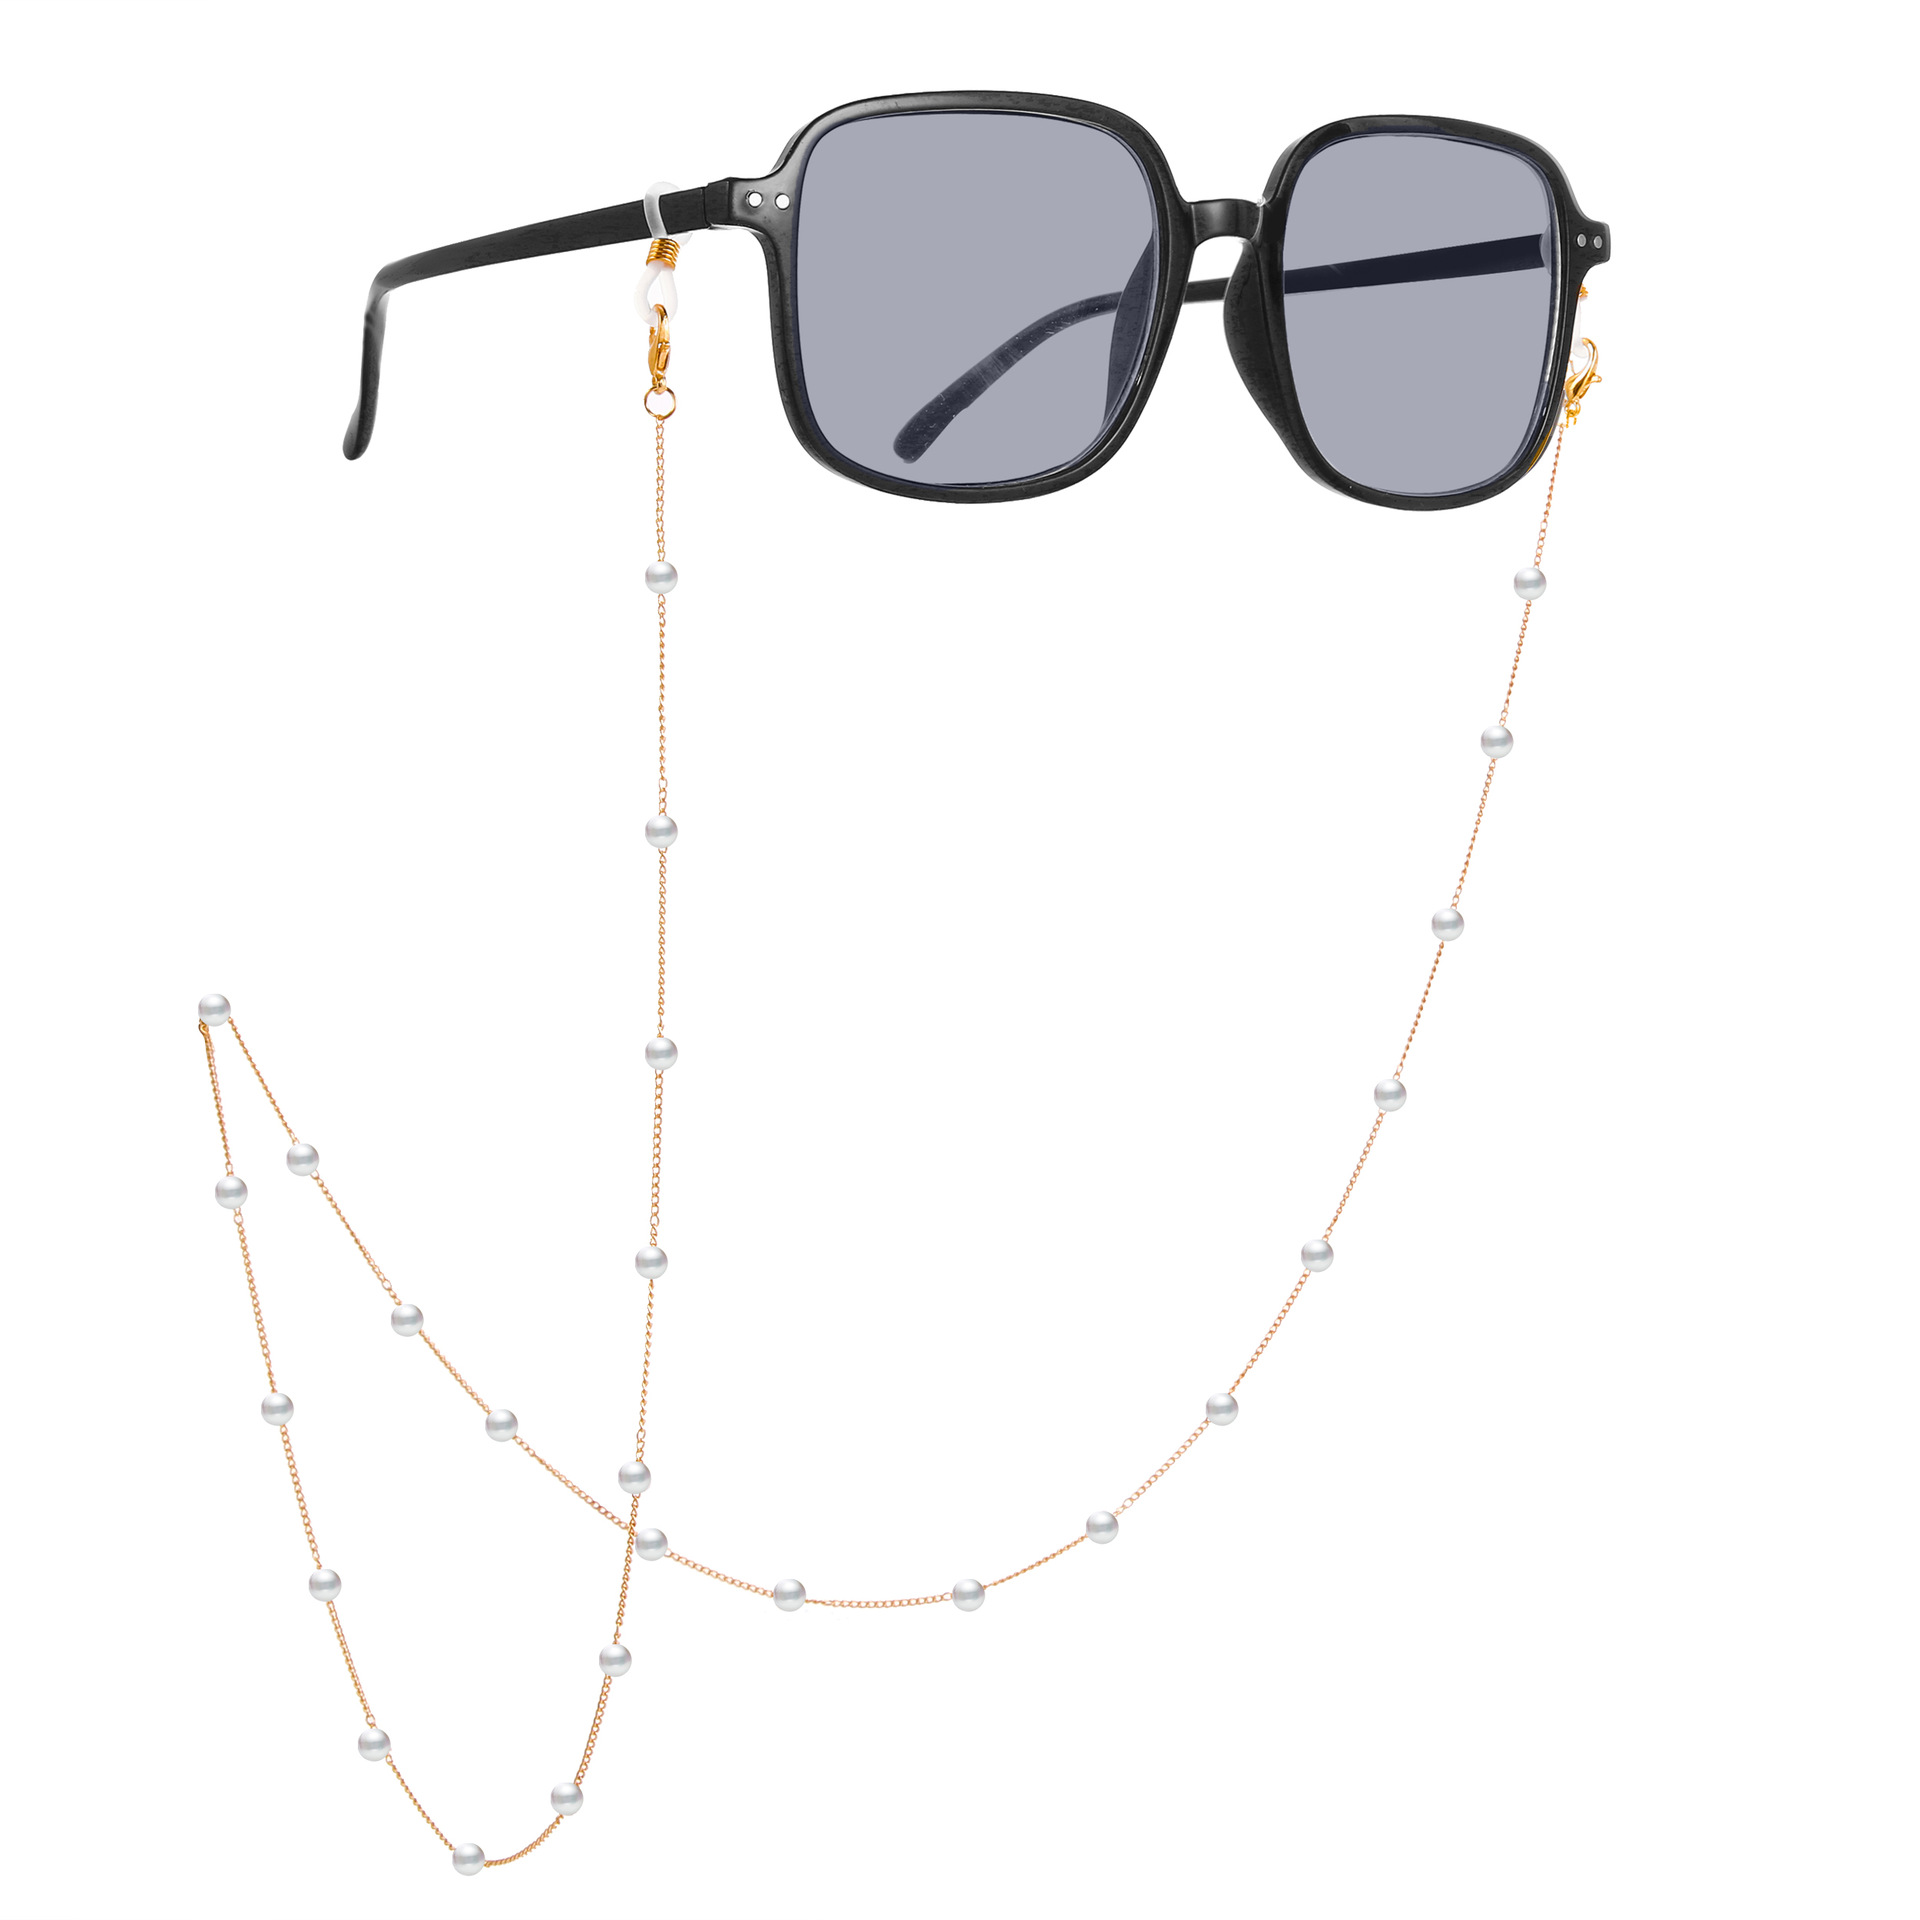 Glassess chain phụ kiện kính dây đeo kim loại chống trơn trượt rơi vỡ trang sức tiện dụng thời trang